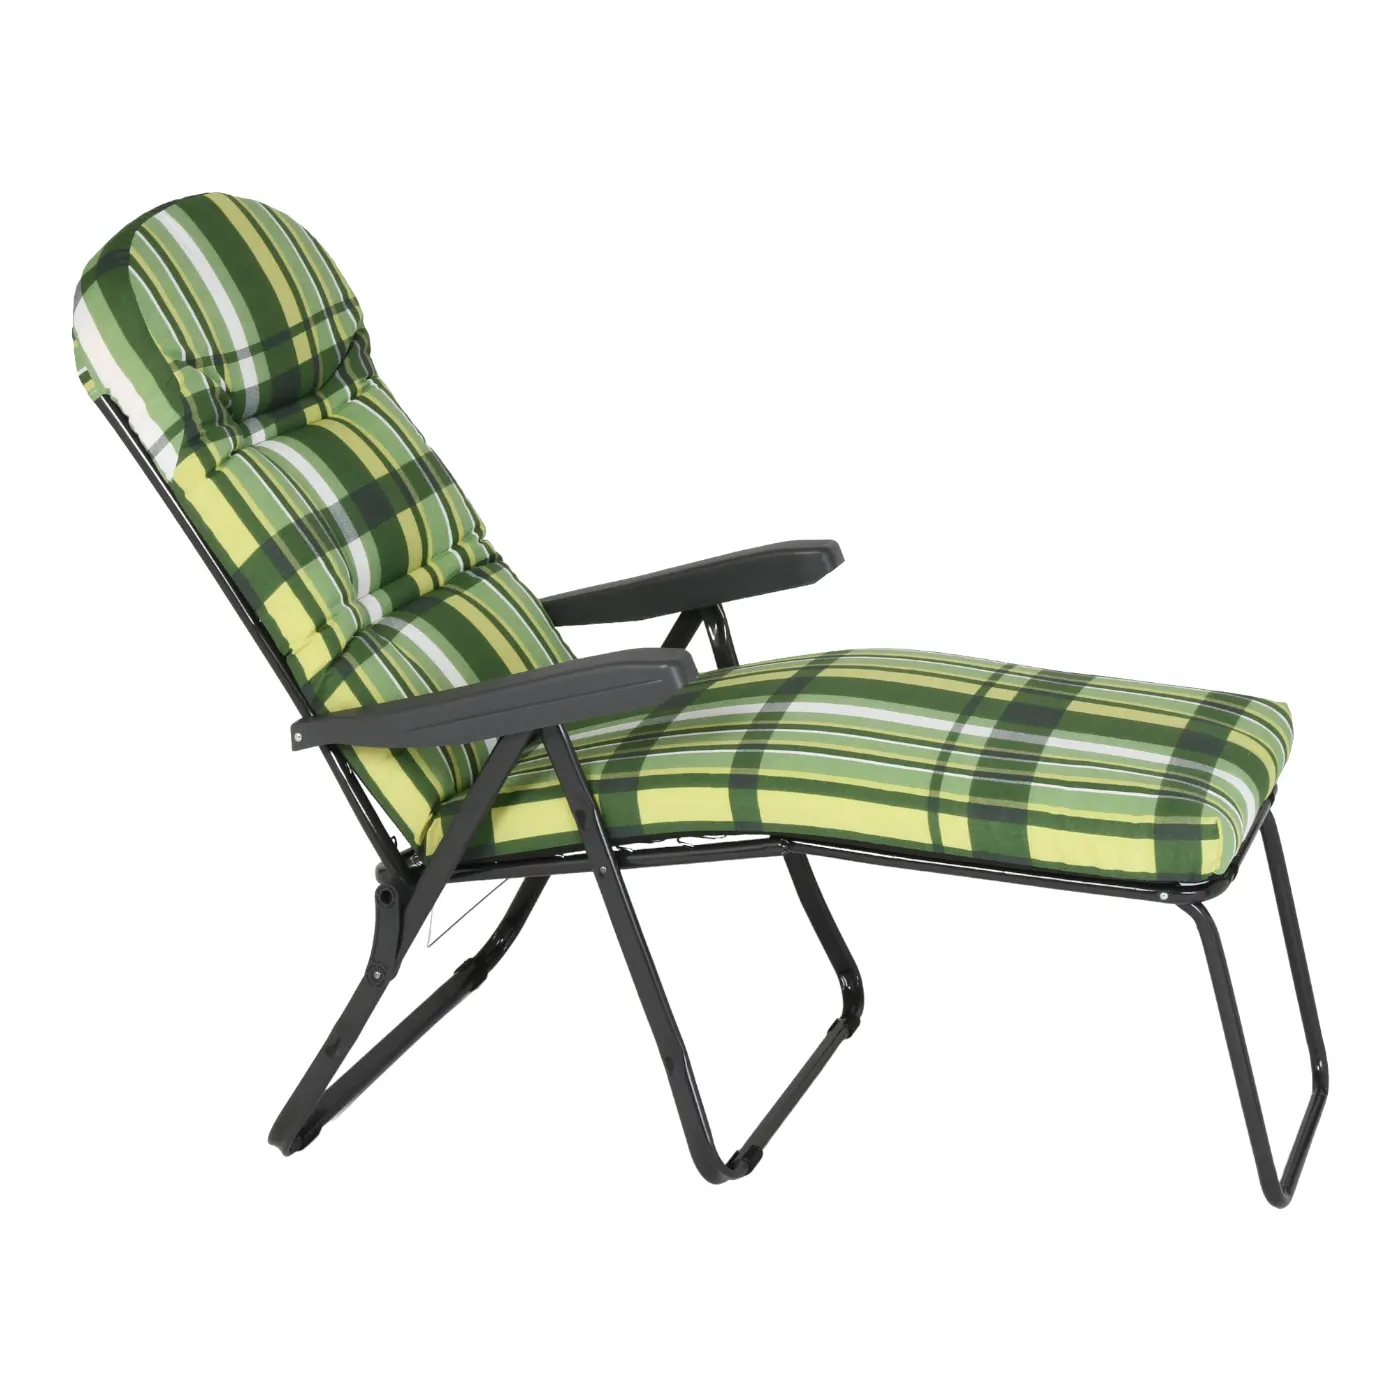 صنع في إيطاليا نوعية جيدة الموردين كرسي كرسي تصميم نمط الأوروبي دائم كراسي الاسترخاء للاستعمال في الهواء الطلق